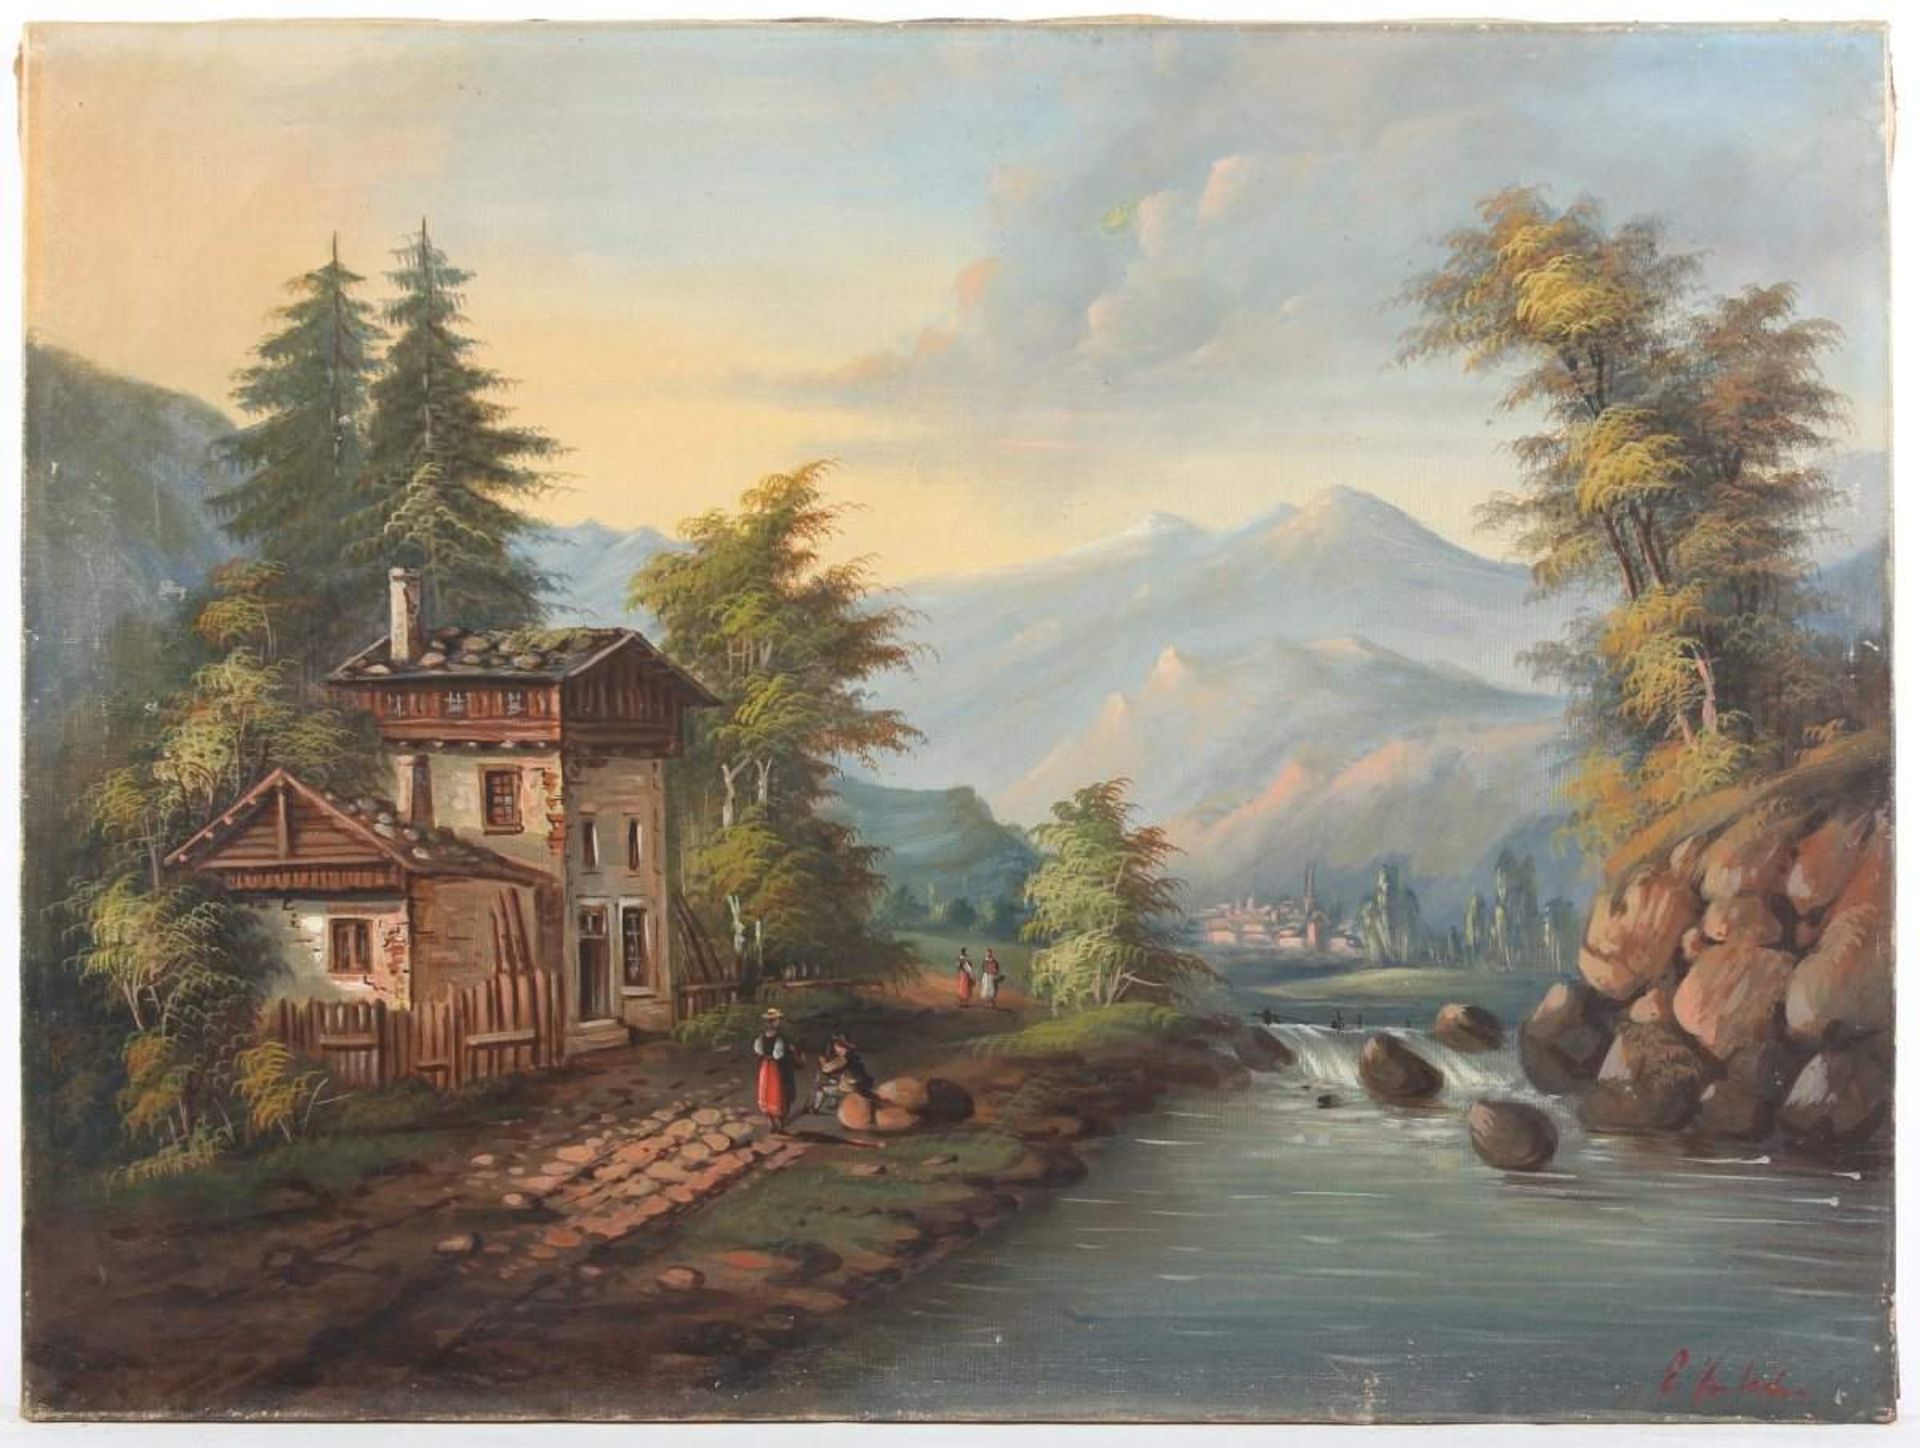 SEMBACH, E. (Maler um 1900), "Gebirgslandschaft", Öl/Lwd., 49 x 65,5, unten rechts signiert, - Image 3 of 3